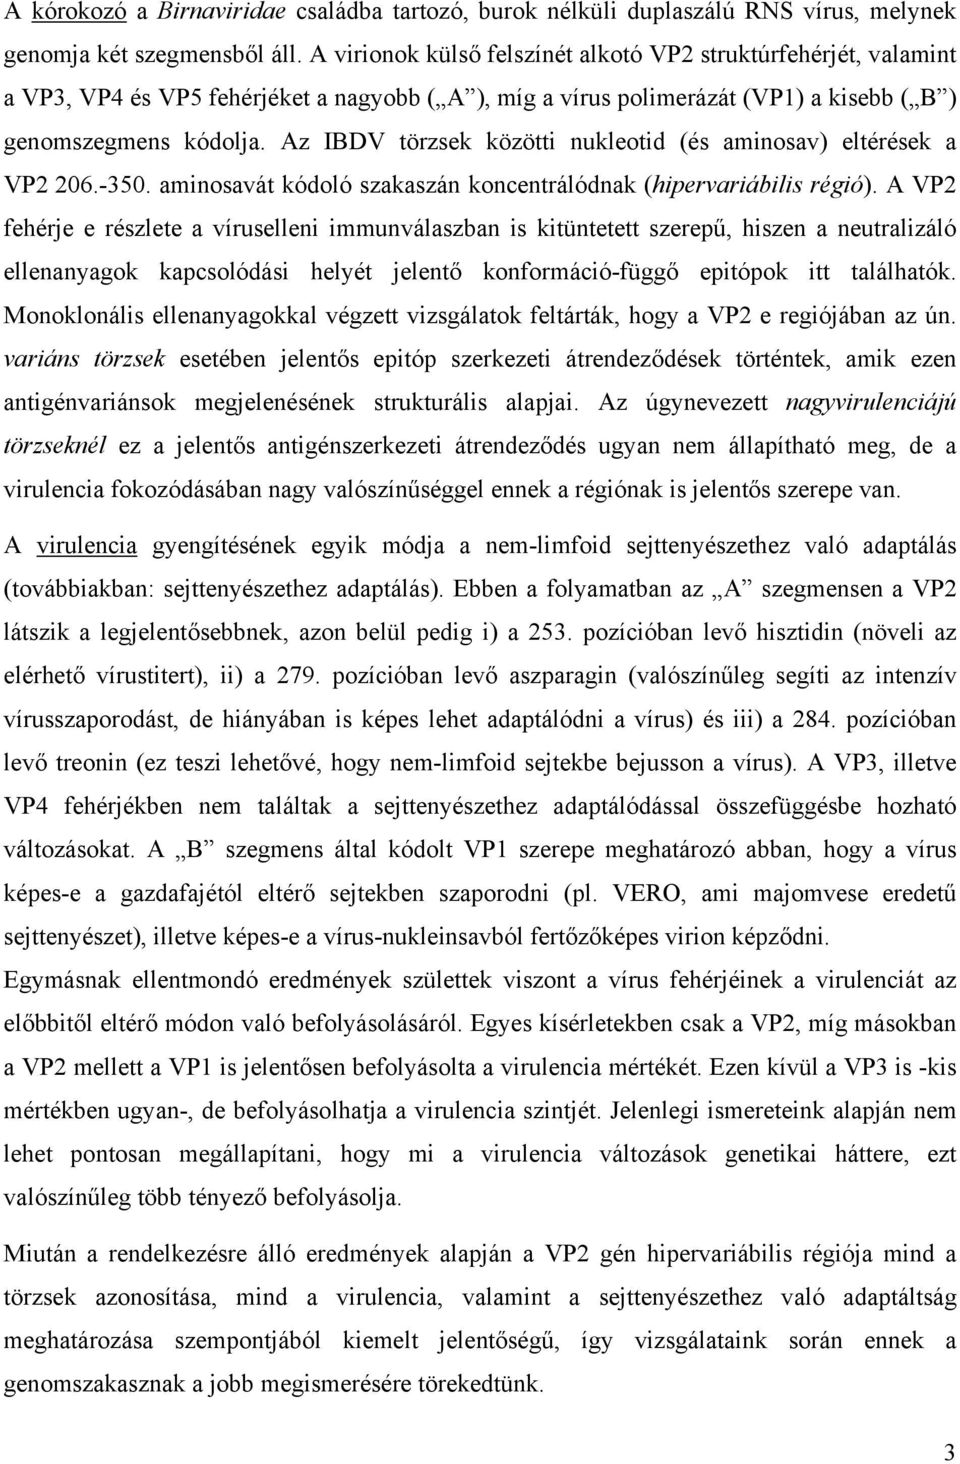 Az IBDV törzsek közötti nukleotid (és aminosav) eltérések a VP2 206.-350. aminosavát kódoló szakaszán koncentrálódnak (hipervariábilis régió).